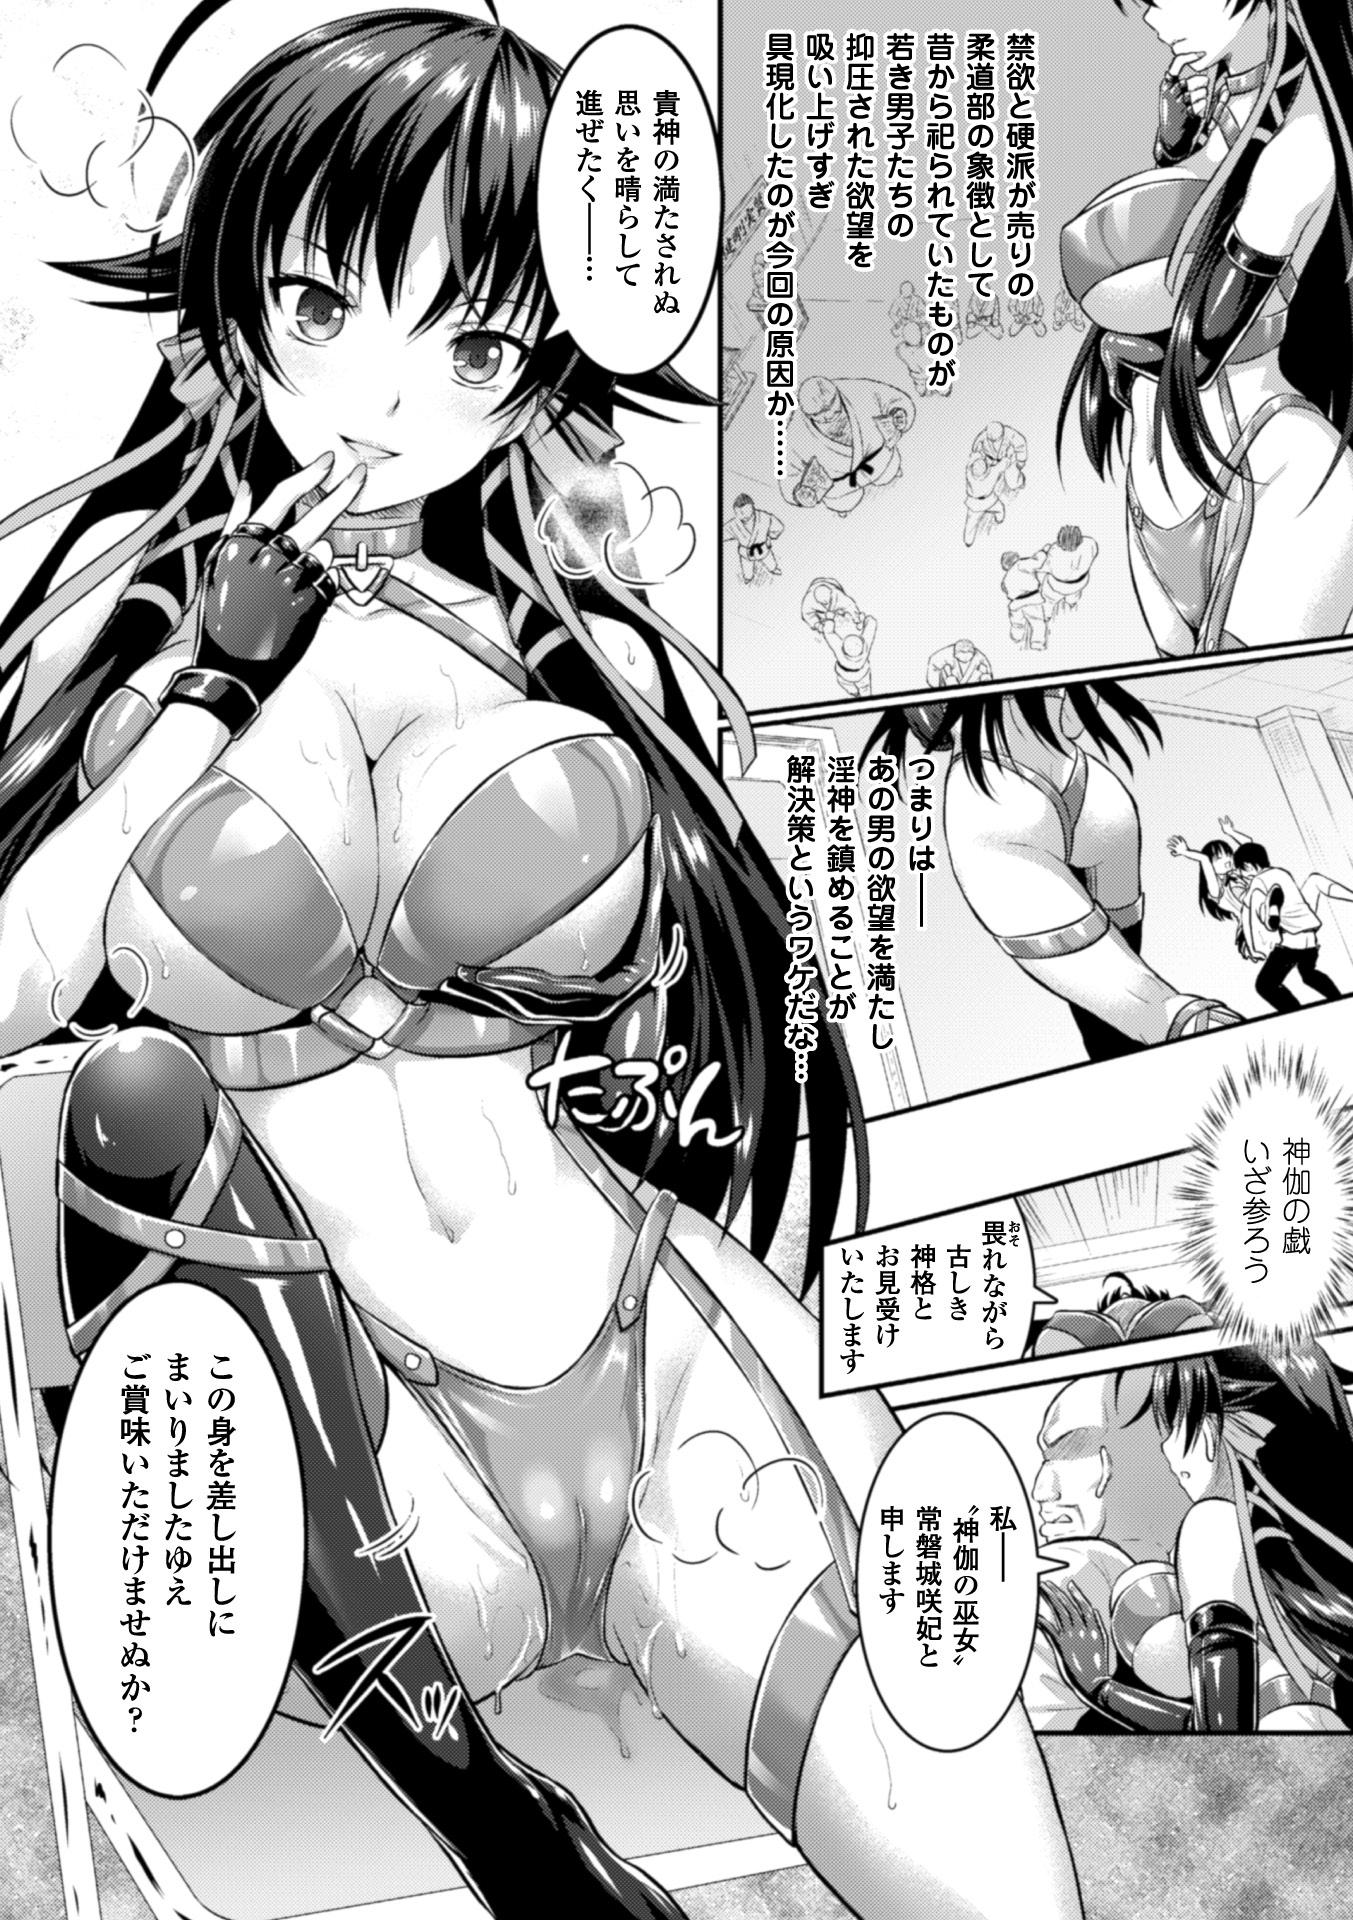 Seigi no Heroine Kangoku File Vol. 3 41